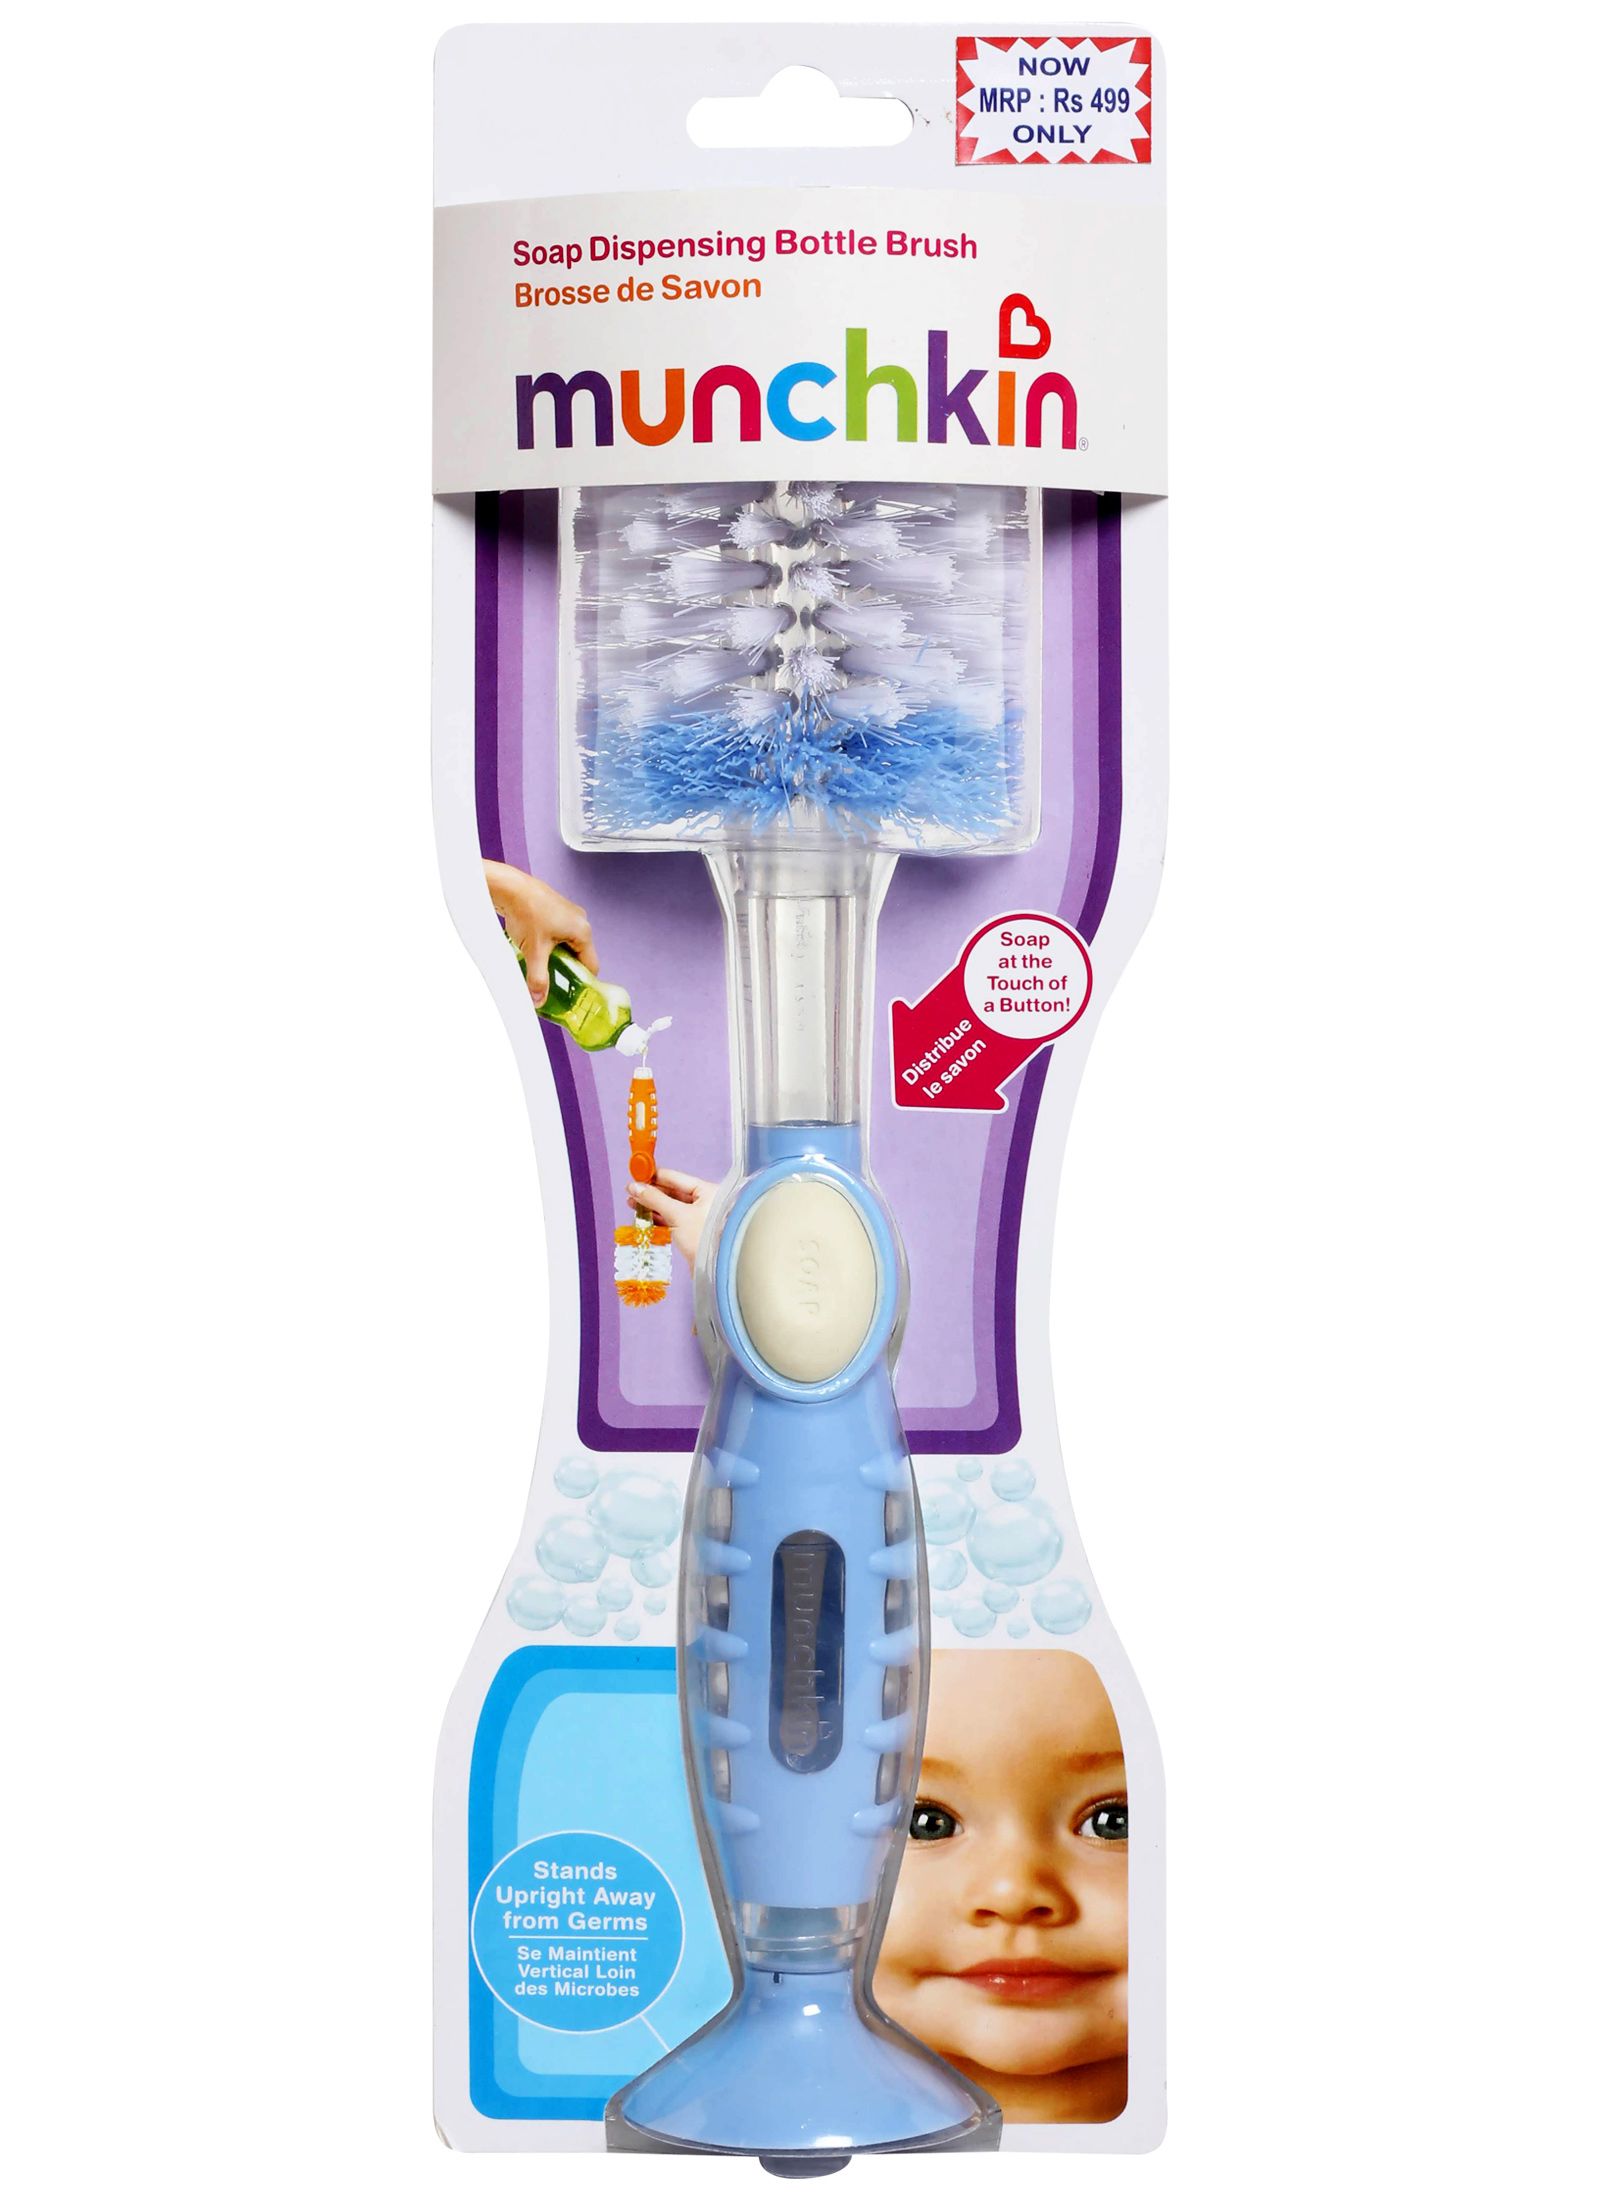 Munchkin - Blue Soap Dispensing Bottle Brush